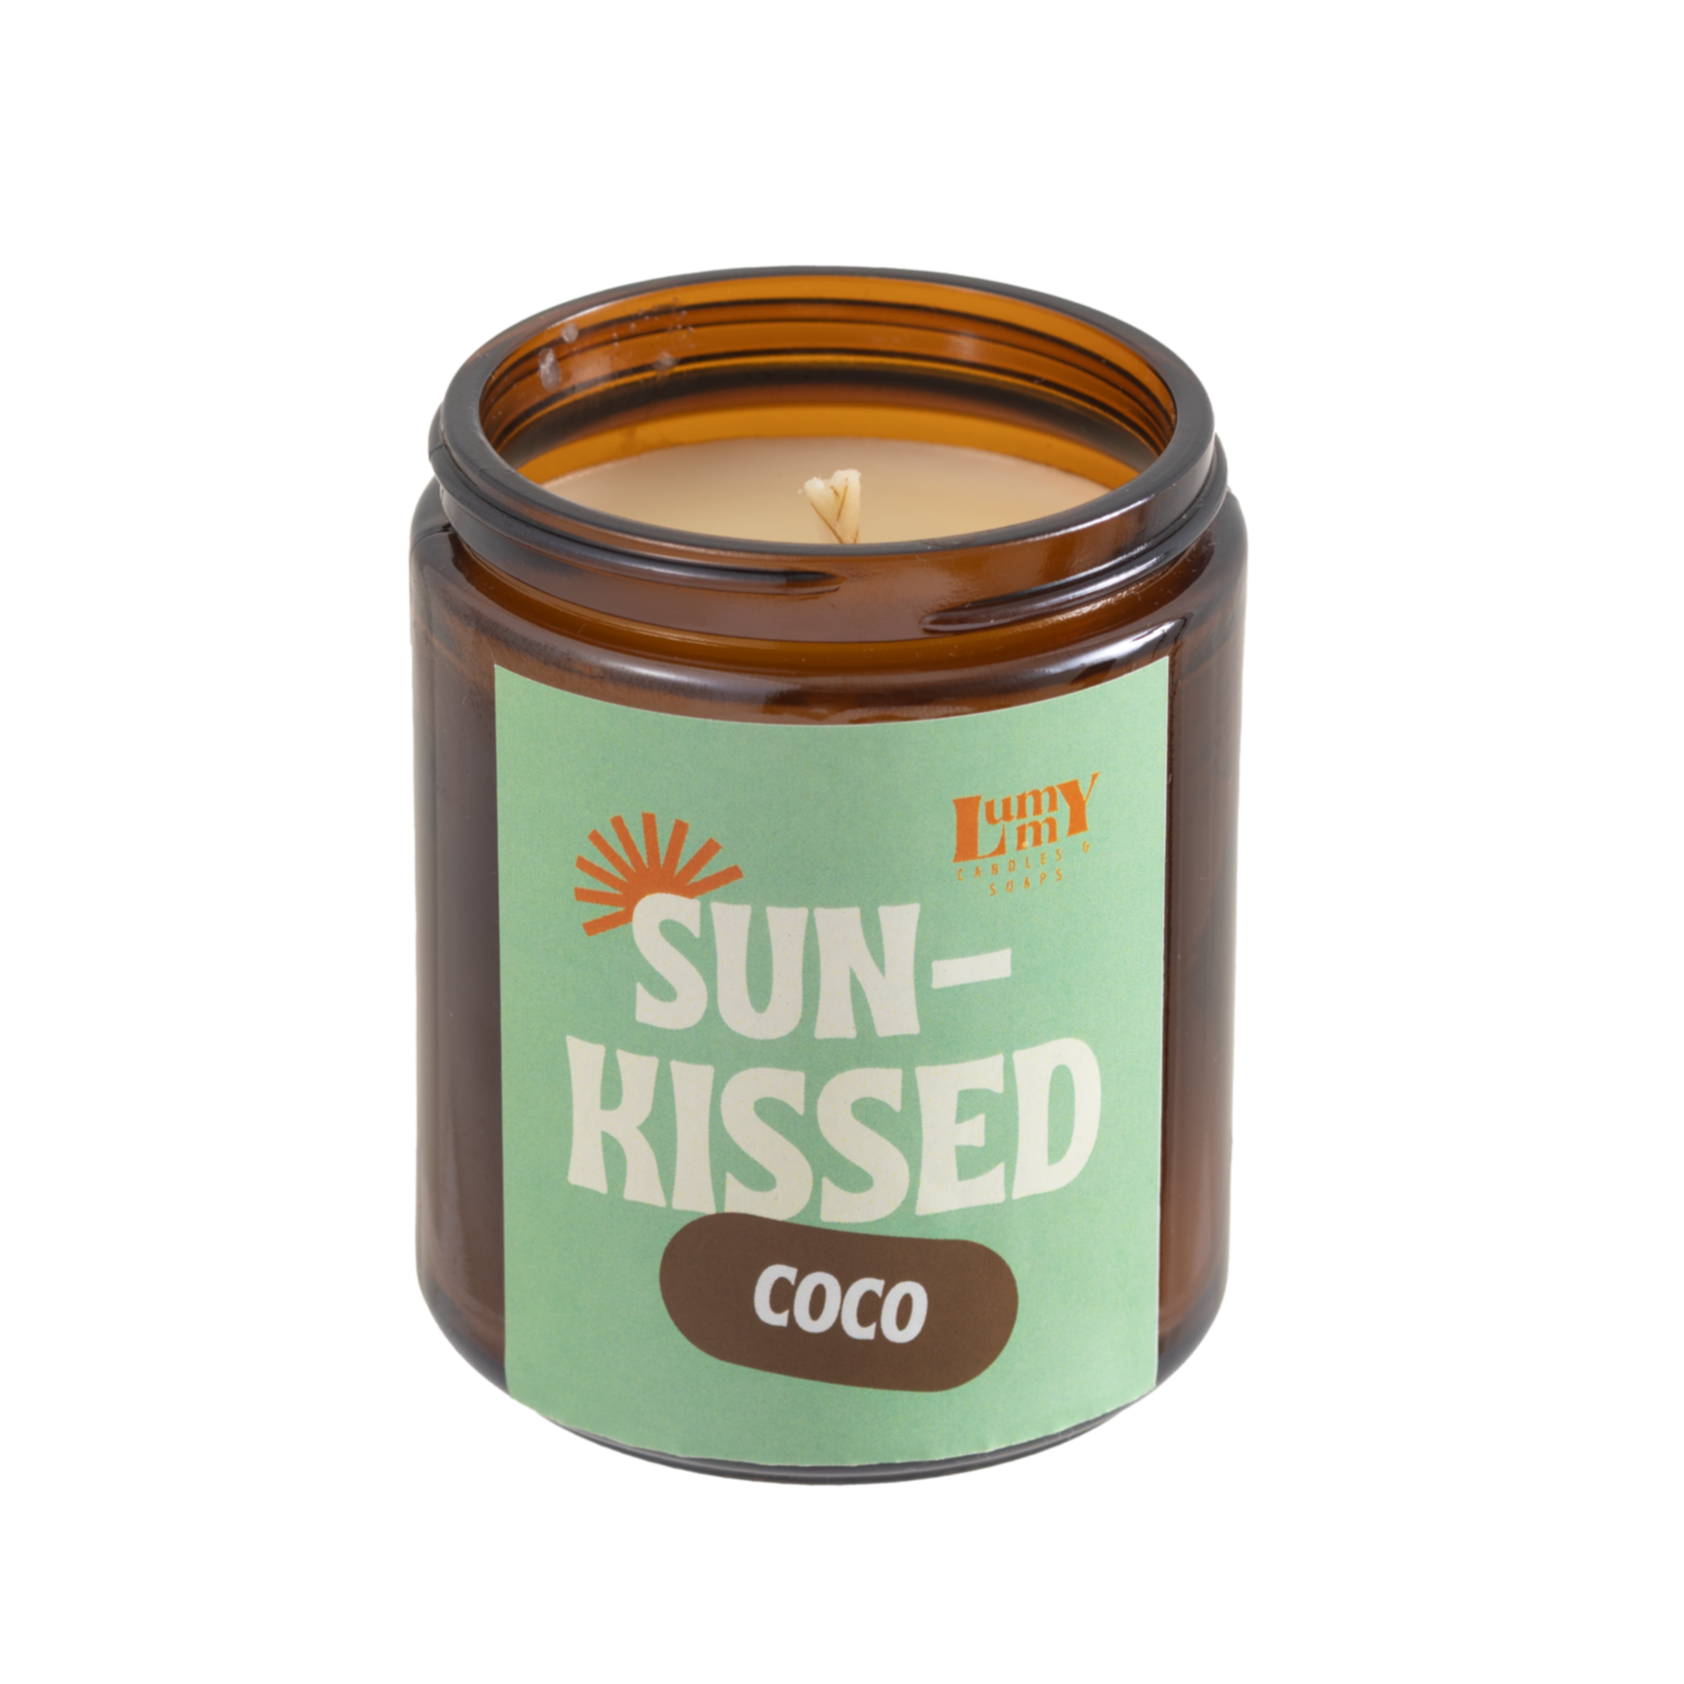 Vela aroma a coco - Sun-Kissed Coco